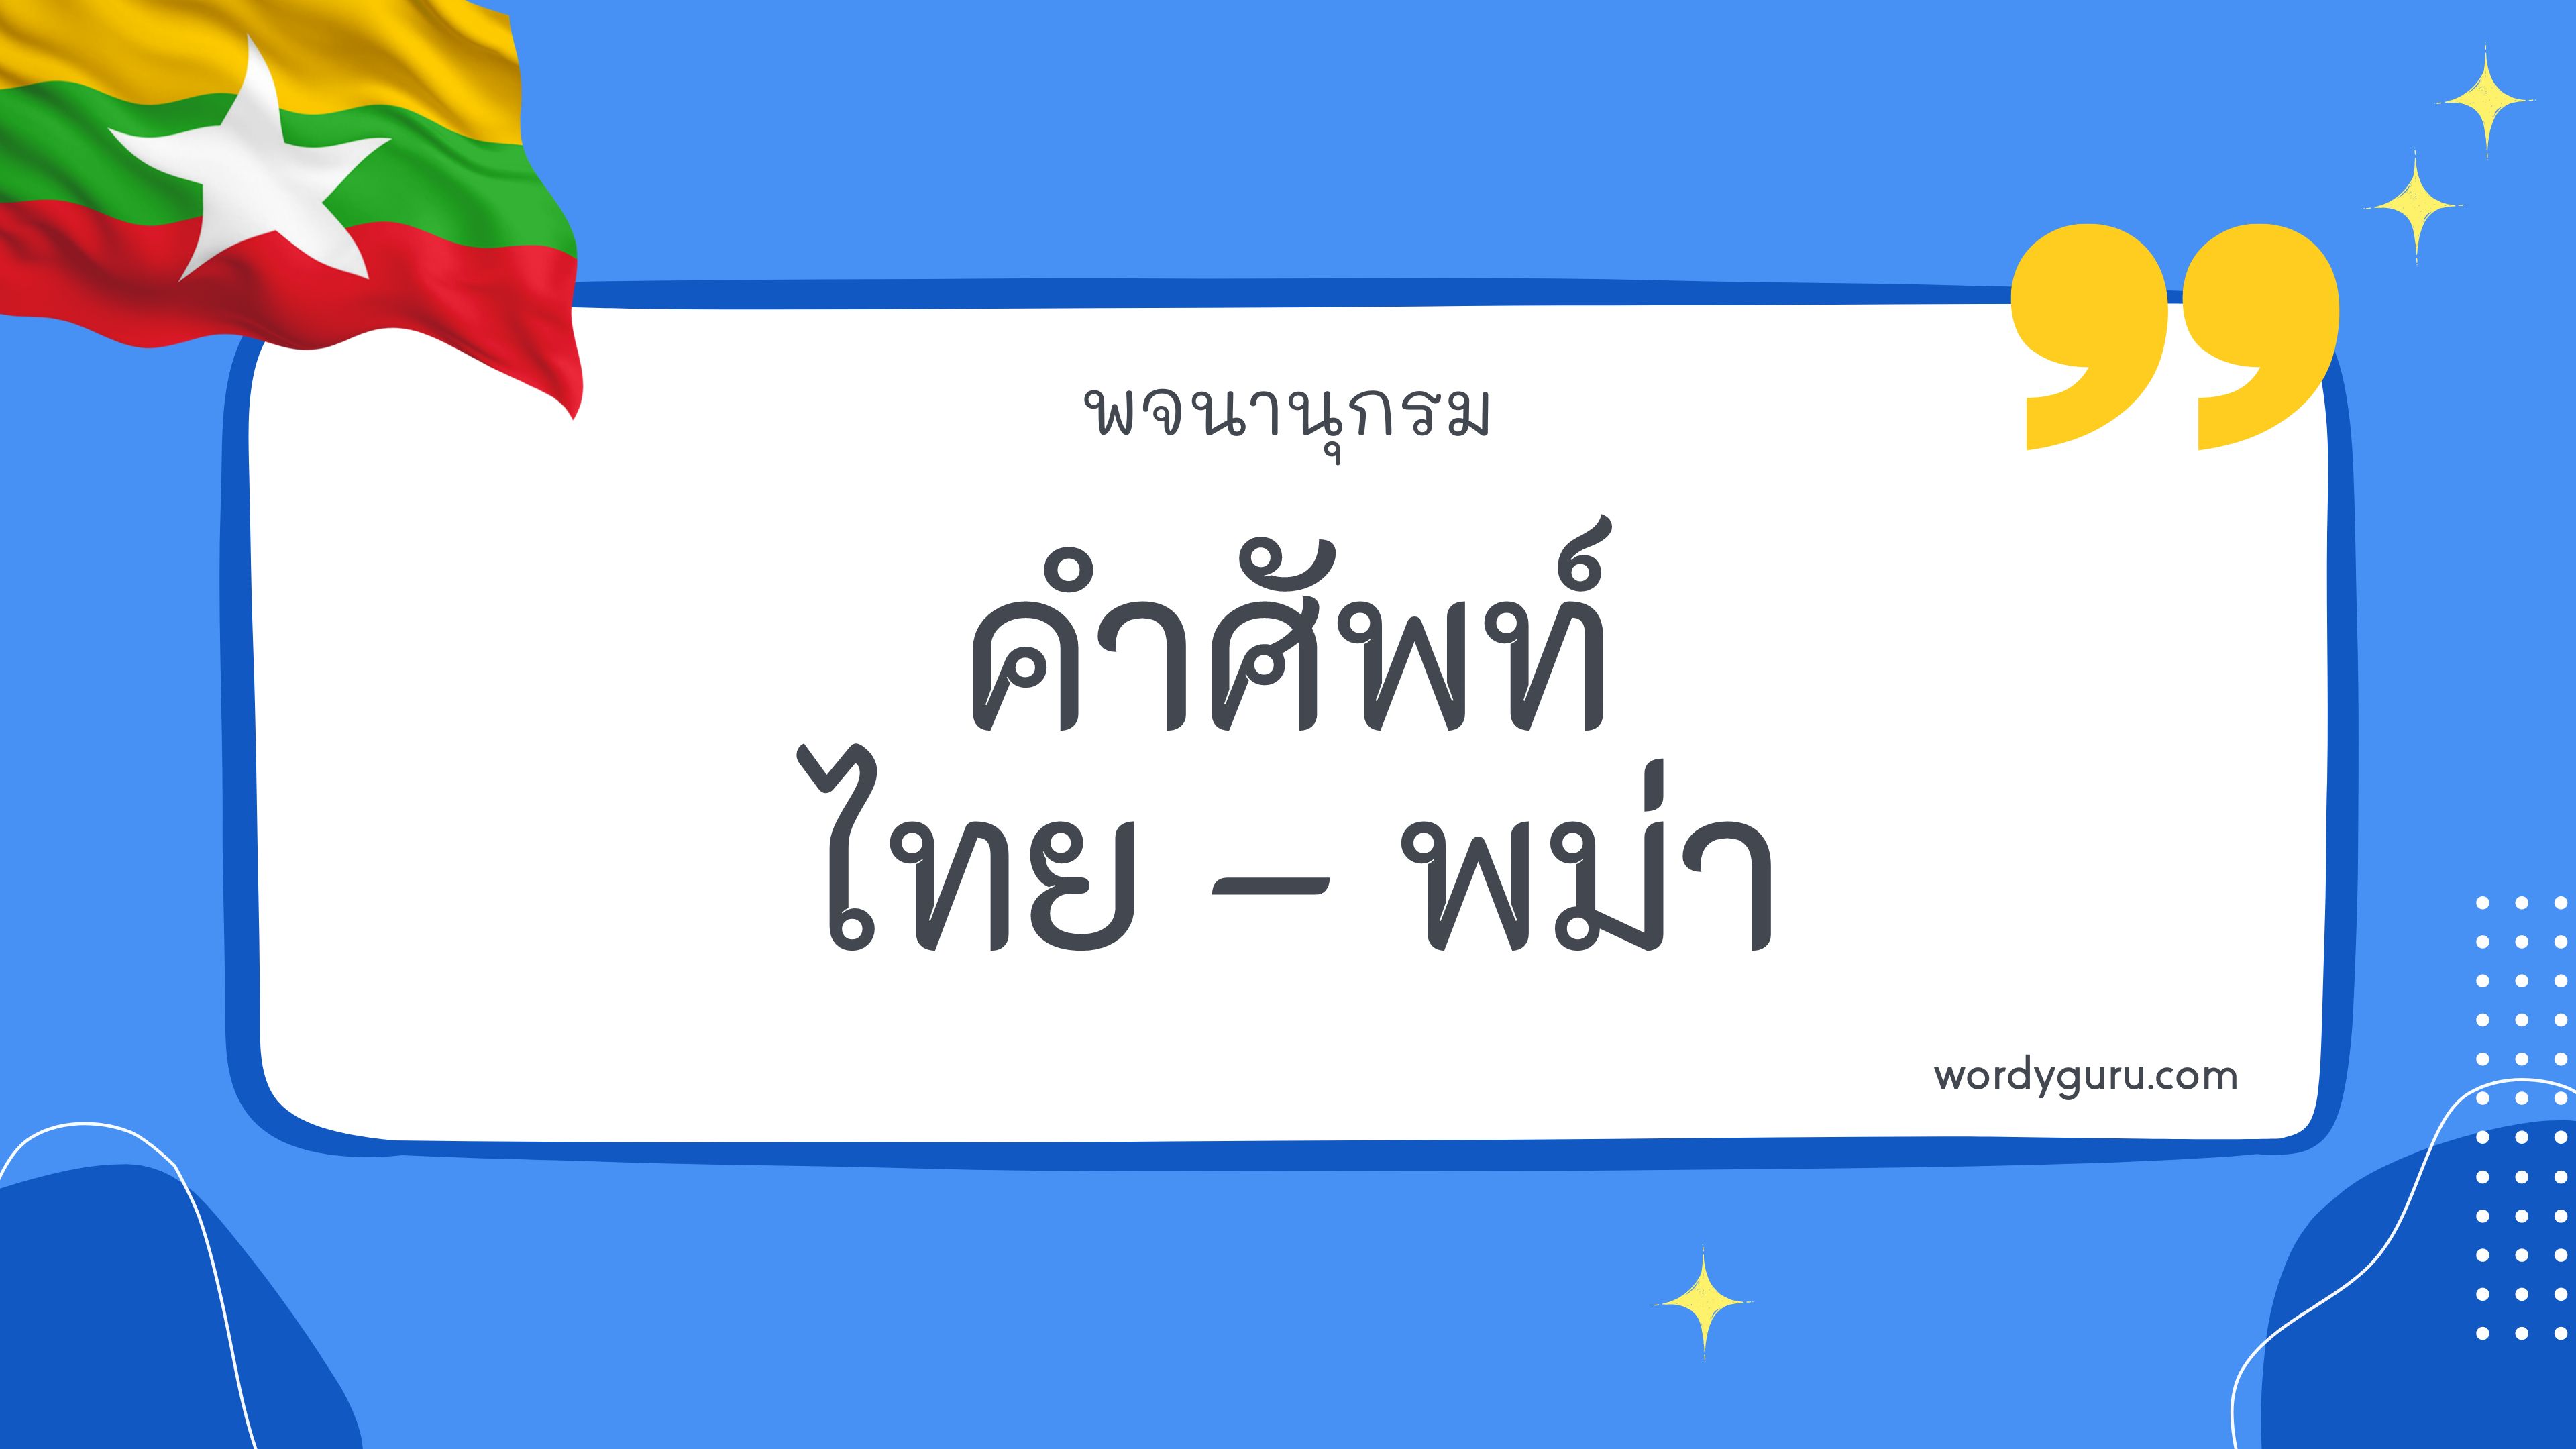 คำศัพท์ภาษาไทย - พม่า 200 คำ ที่นิยมใช้ พบเห็นบ่อย ในชีวิตประจำวัน